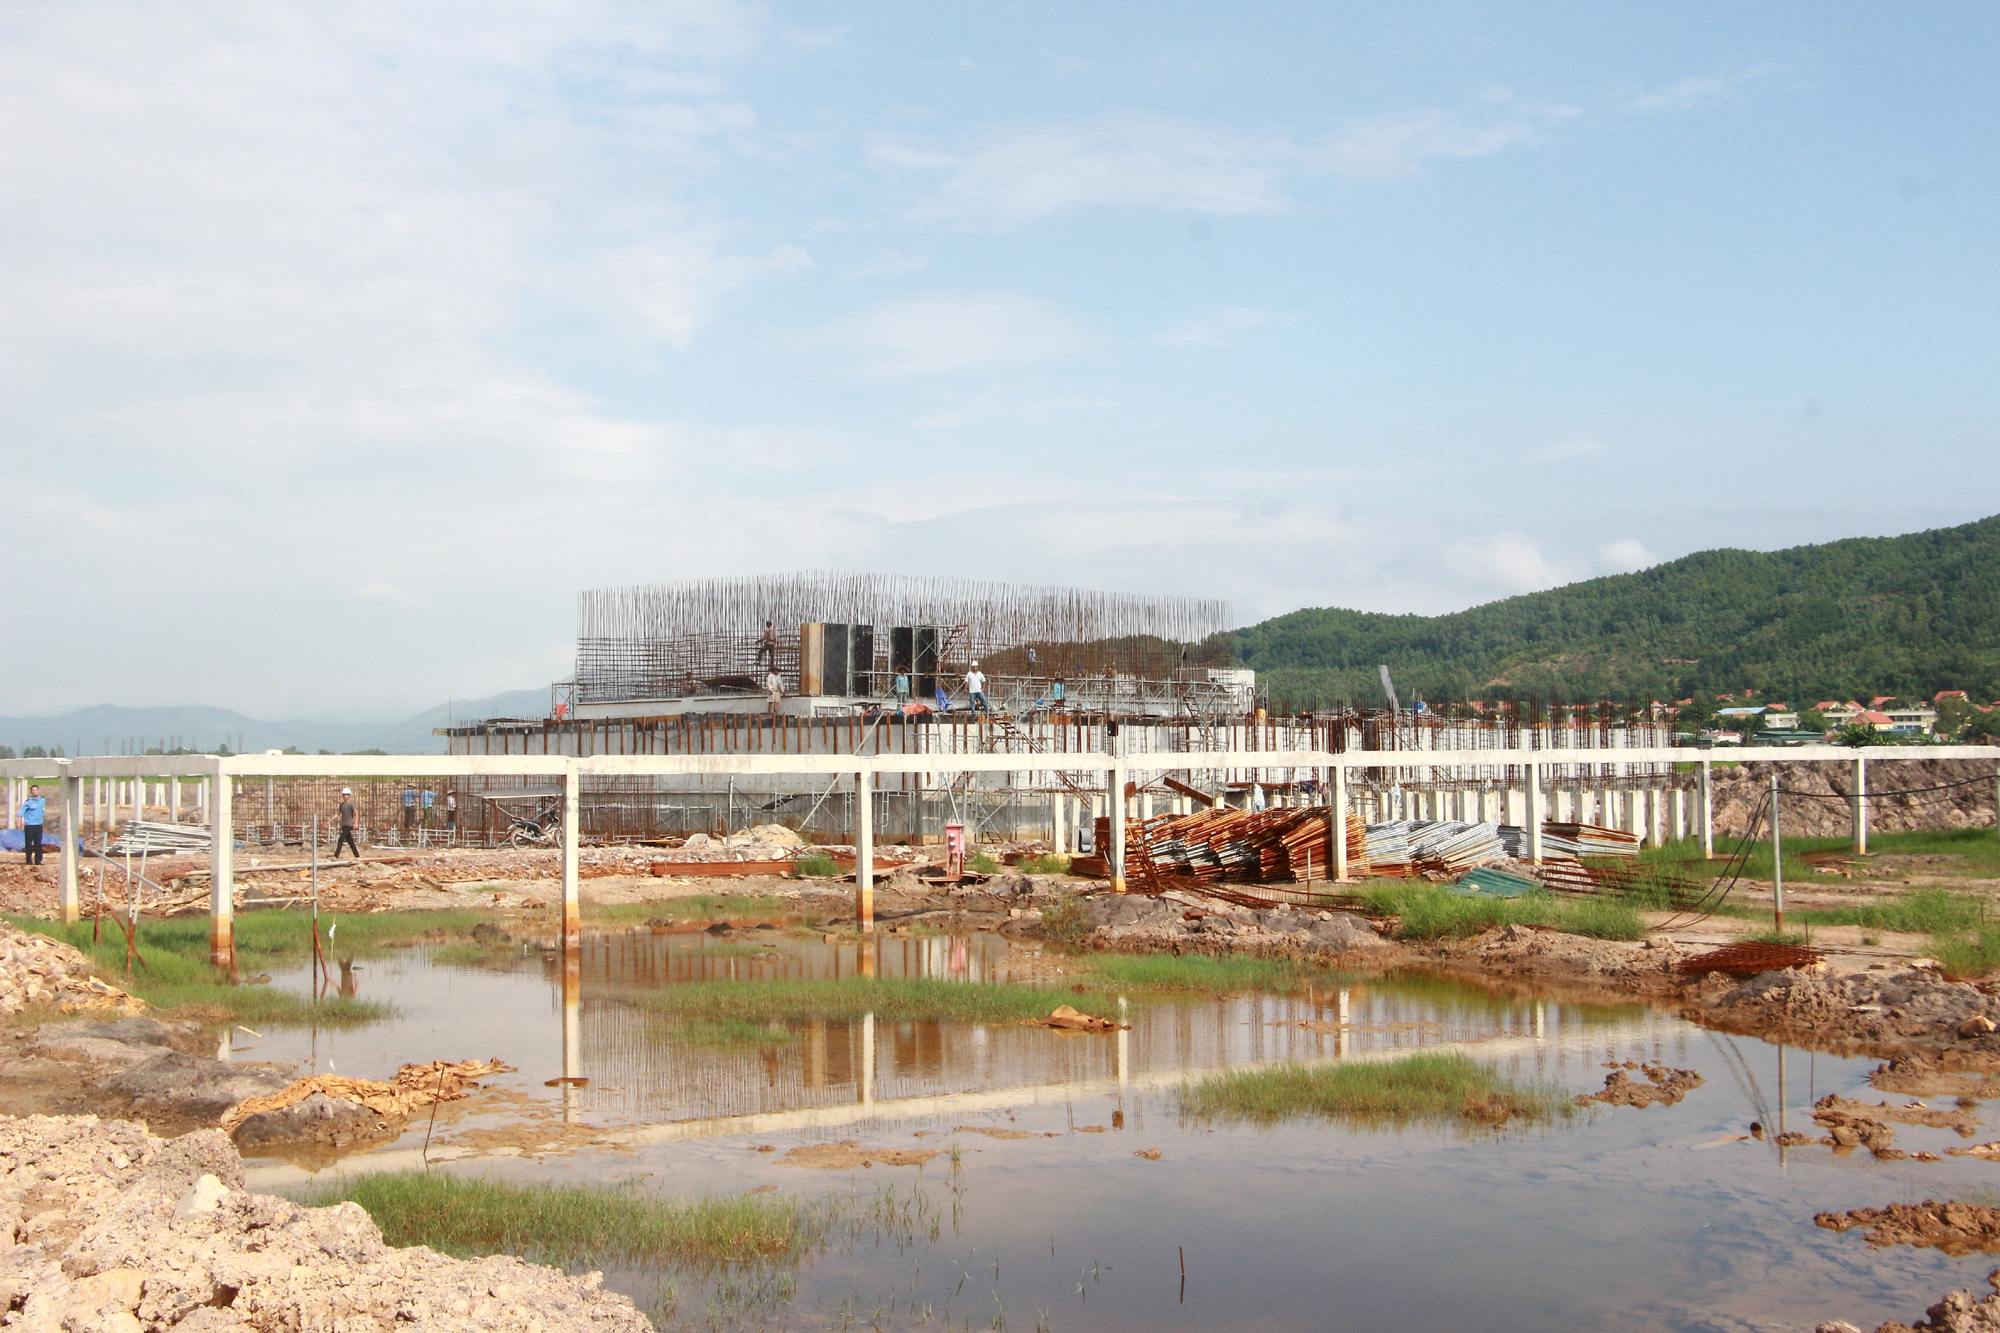 Trạm cấp nước sạch công suất 6.500m3/ngày/đêm trong KCN Sông Khoai đang được triển khai đầu tư xây dựng. Ảnh: Mạnh Trường